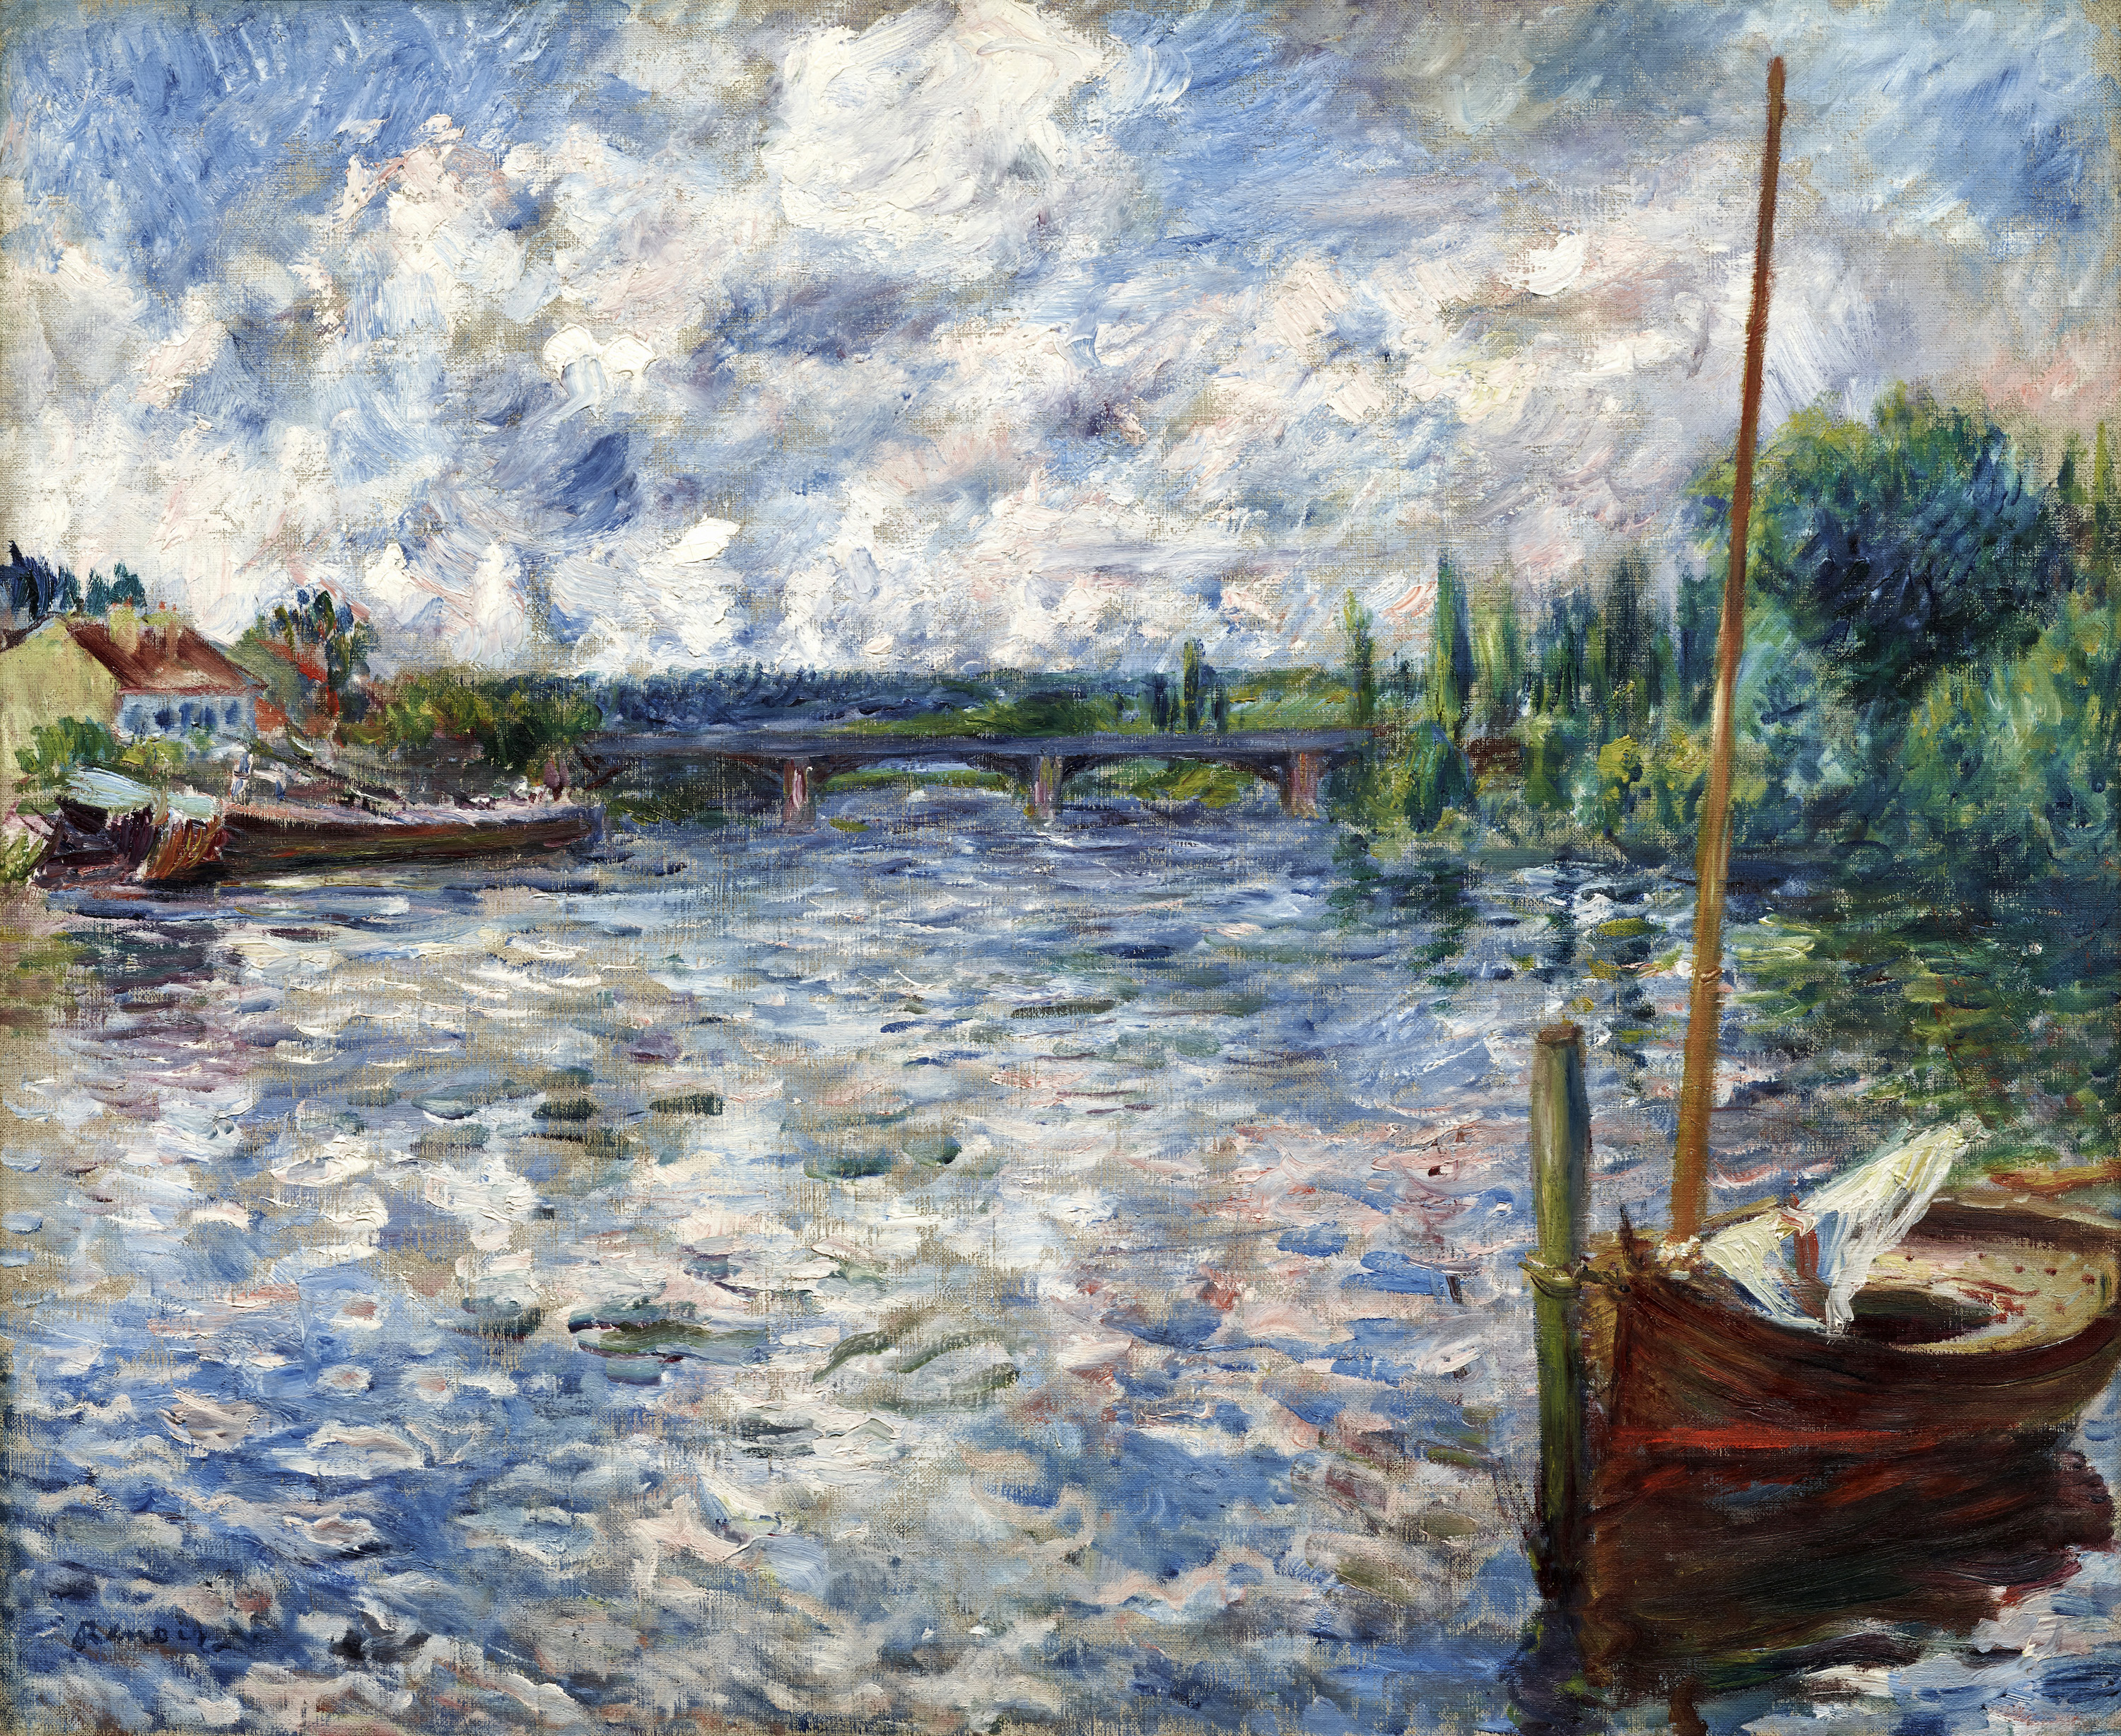 沙頭塞納河 by Pierre-Auguste Renoir - 1874 - 50.8 x 63.5 cm 